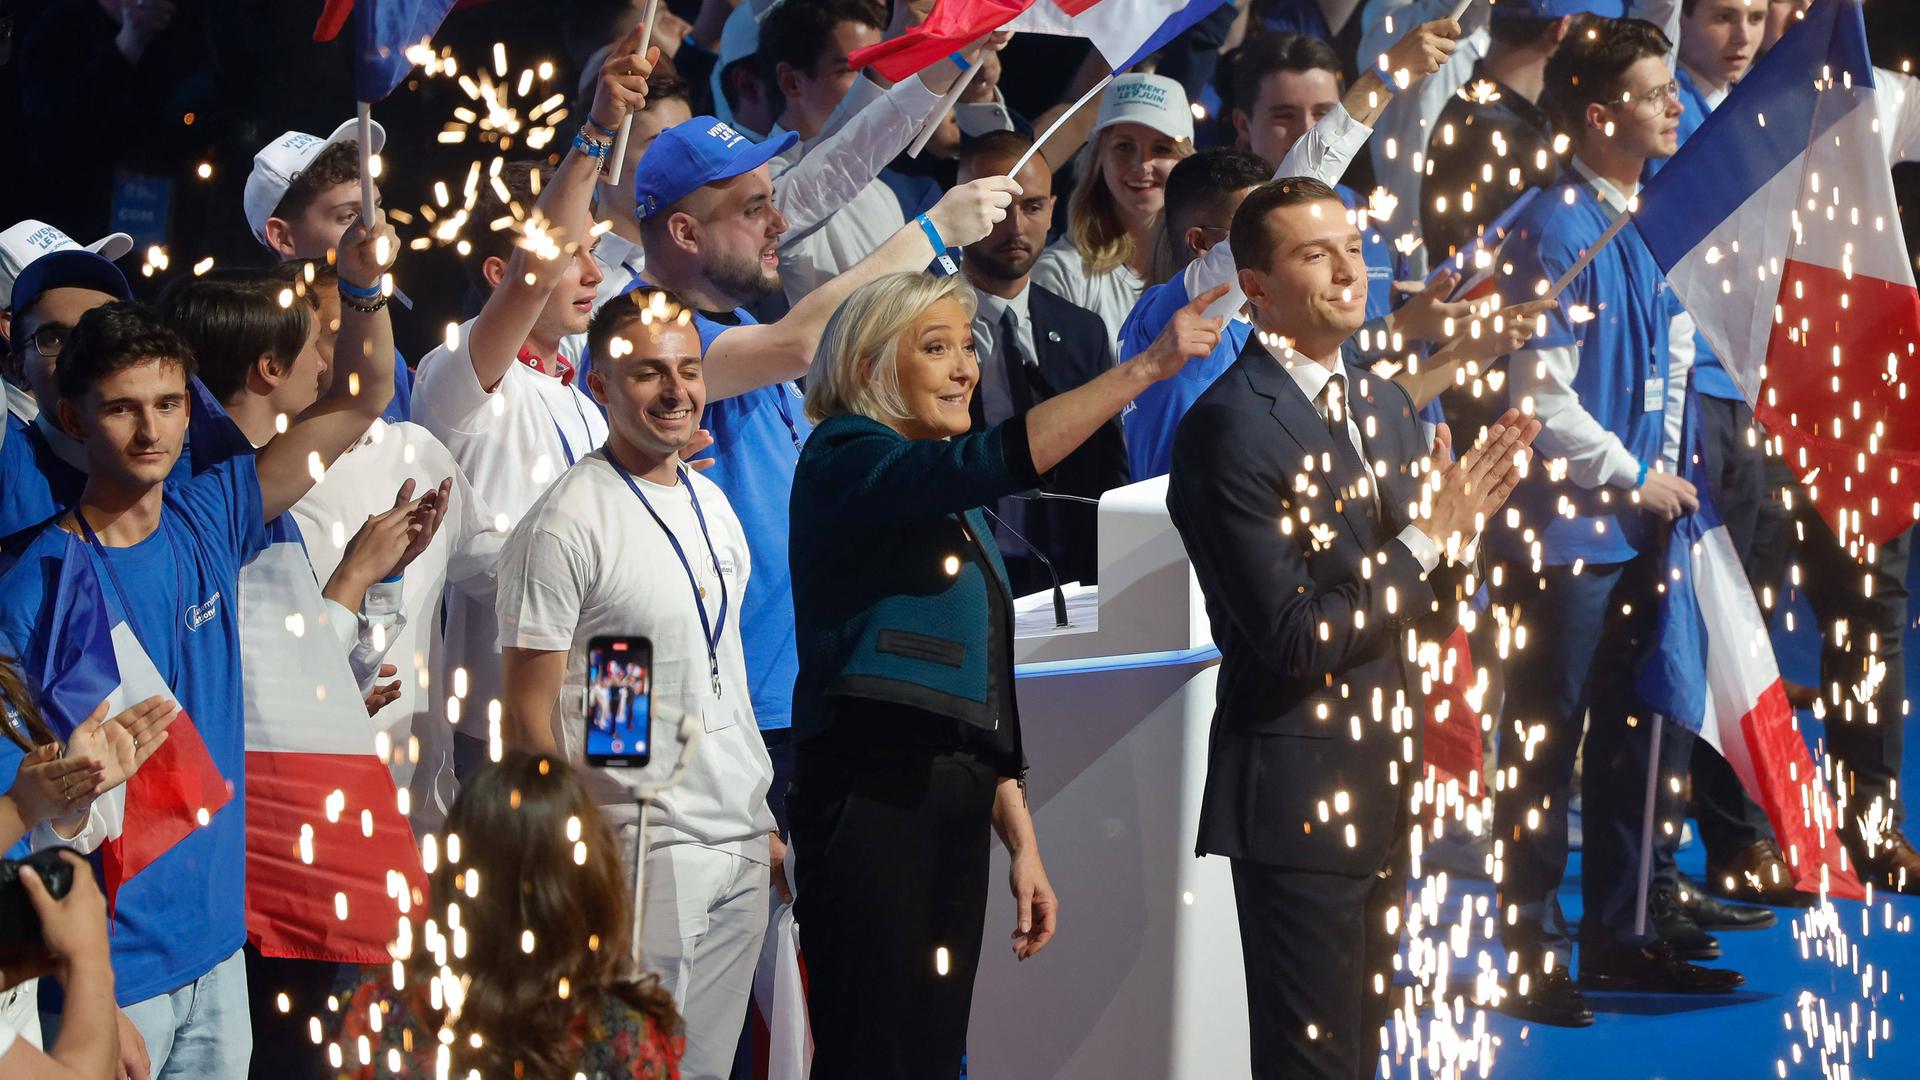 Marine Le Pen und ihr Parteichef Bardella vom Rassemblement National stehen auf einer Bühne, umringt von Anhängern, und feiern.